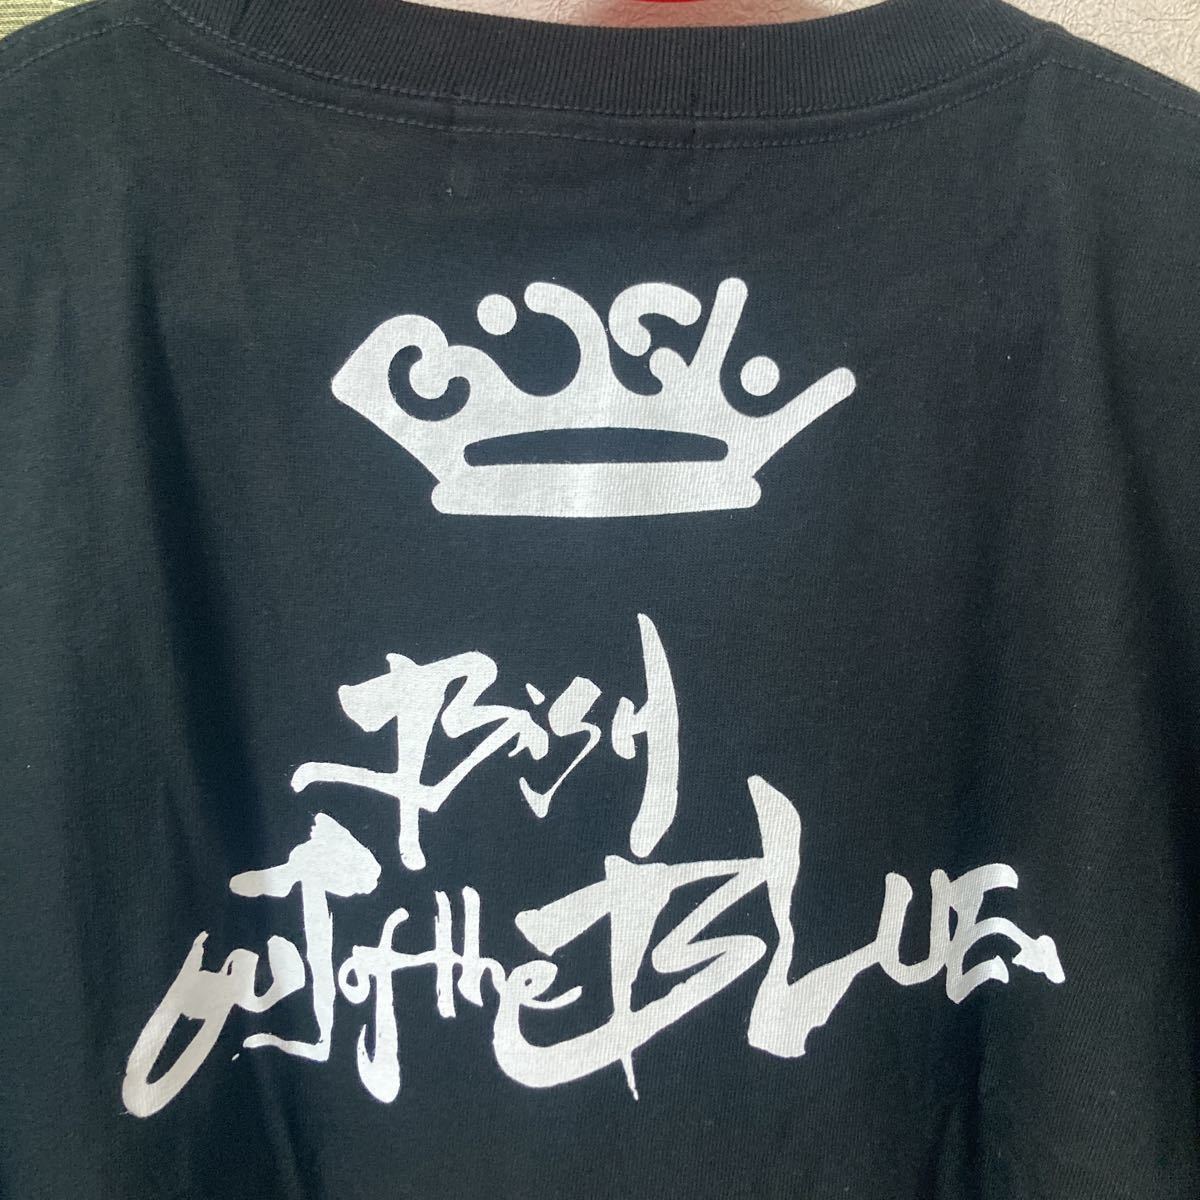 [ beautiful goods ]BiSHbishu........ T-shirt cent chihirochichiL size 